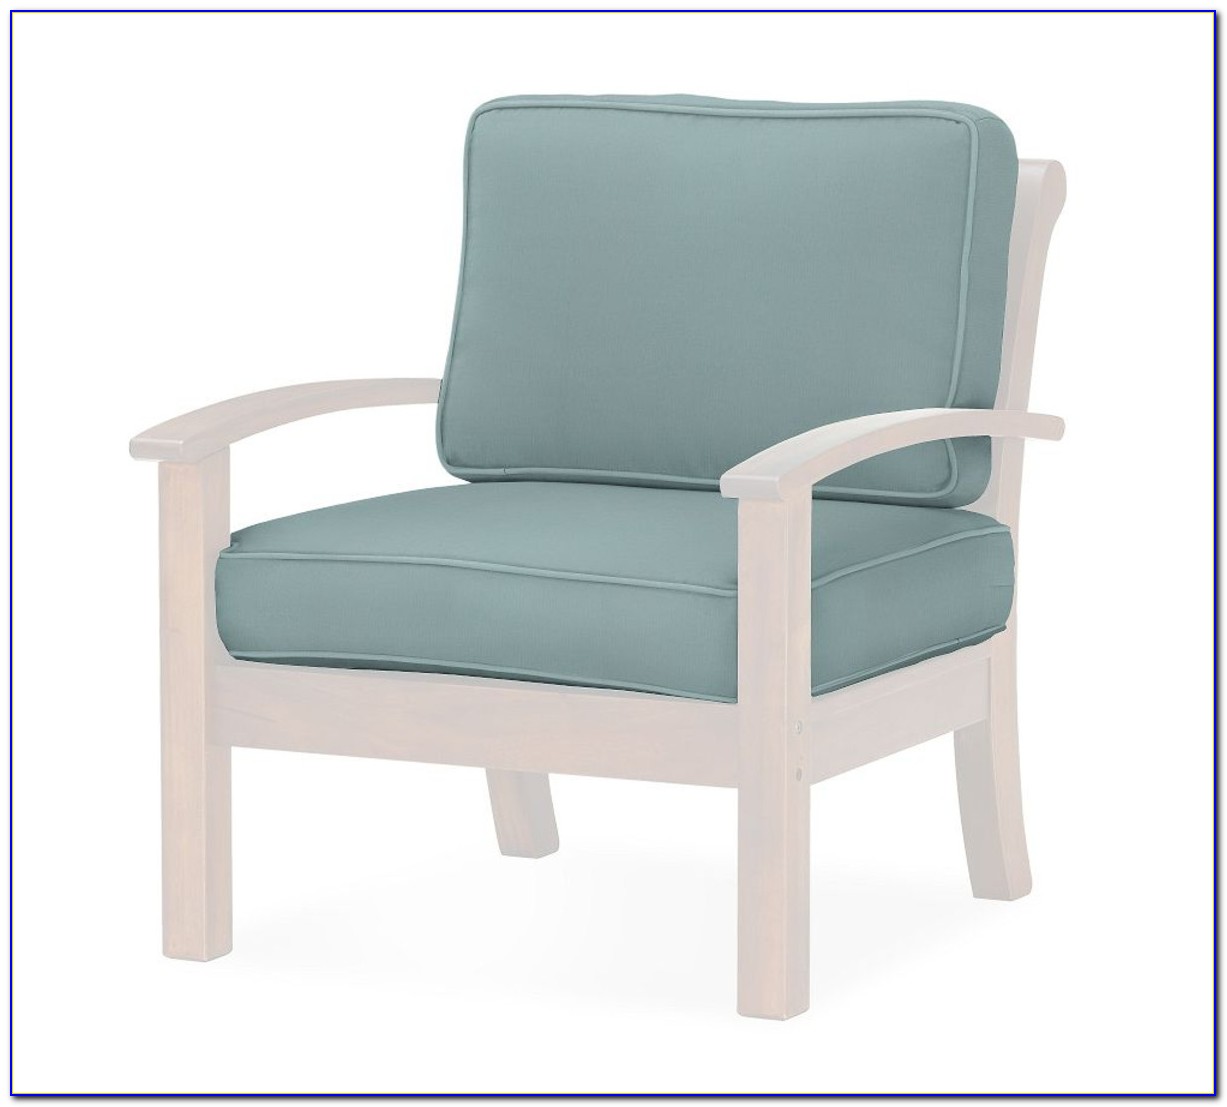 Adirondack Chair Cushions Australia - Chairs : Home Design 